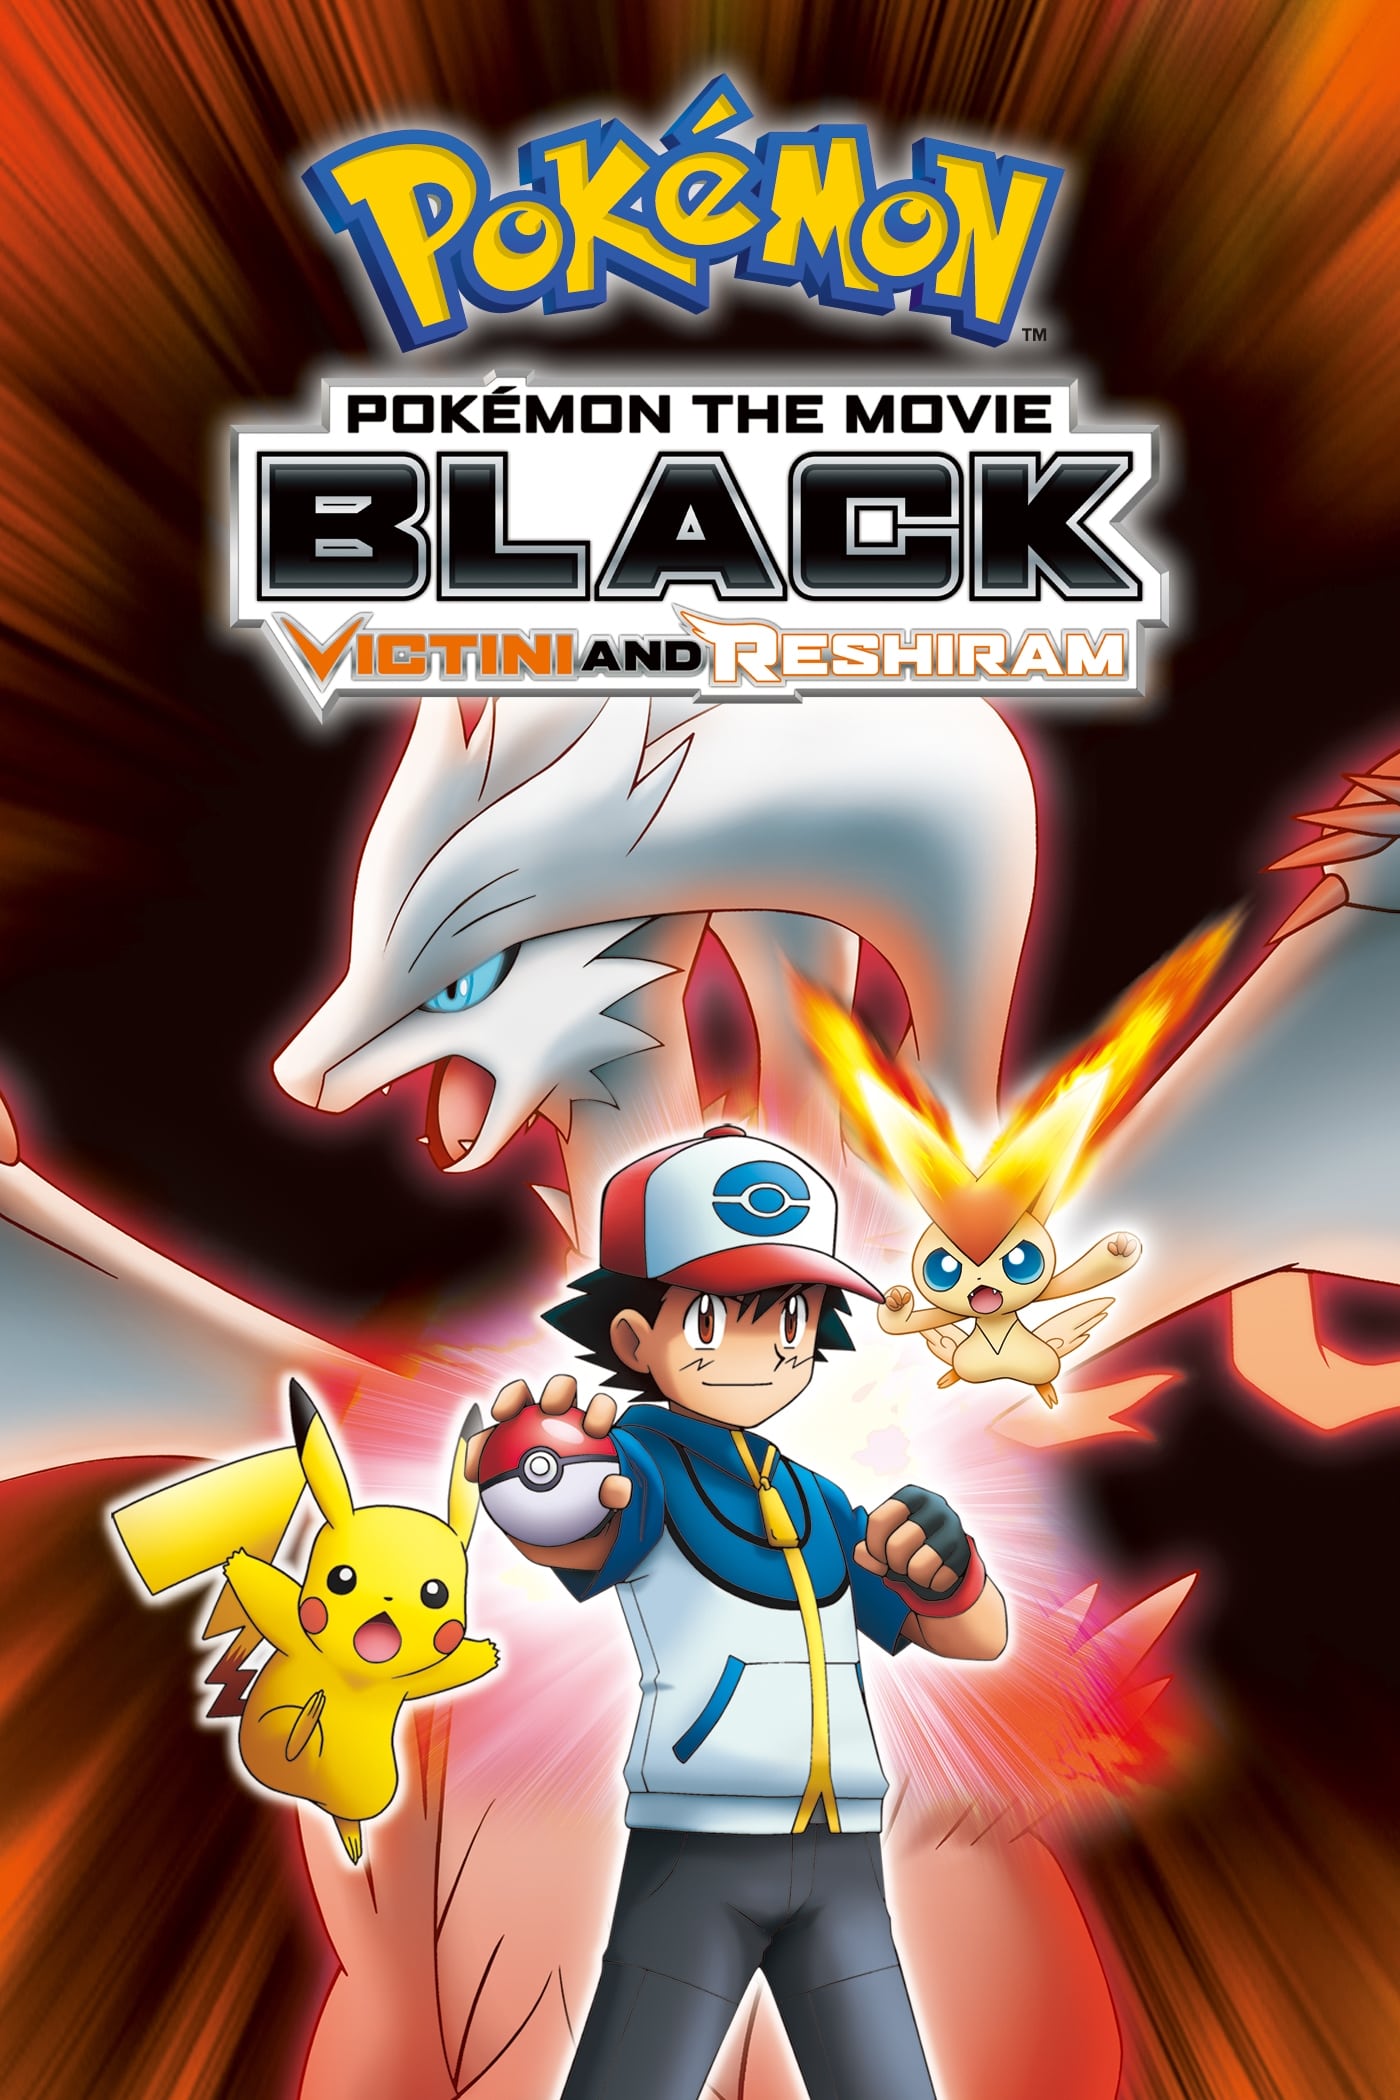 Pokémon the Movie: Black - Victini and Reshiram (2011)